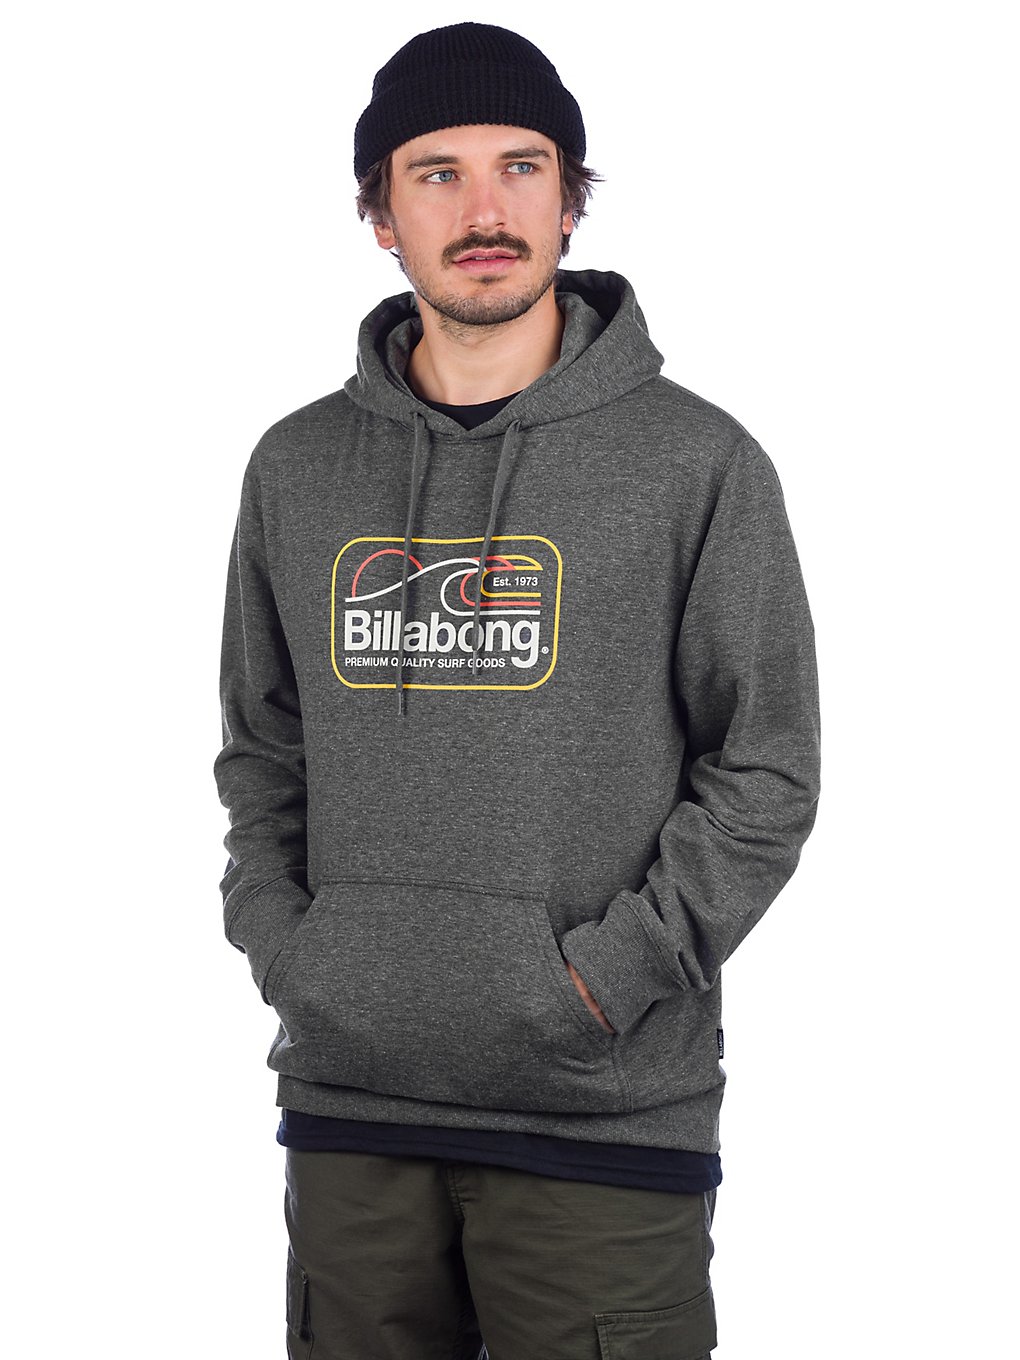 Billabong dive hoodie musta, billabong